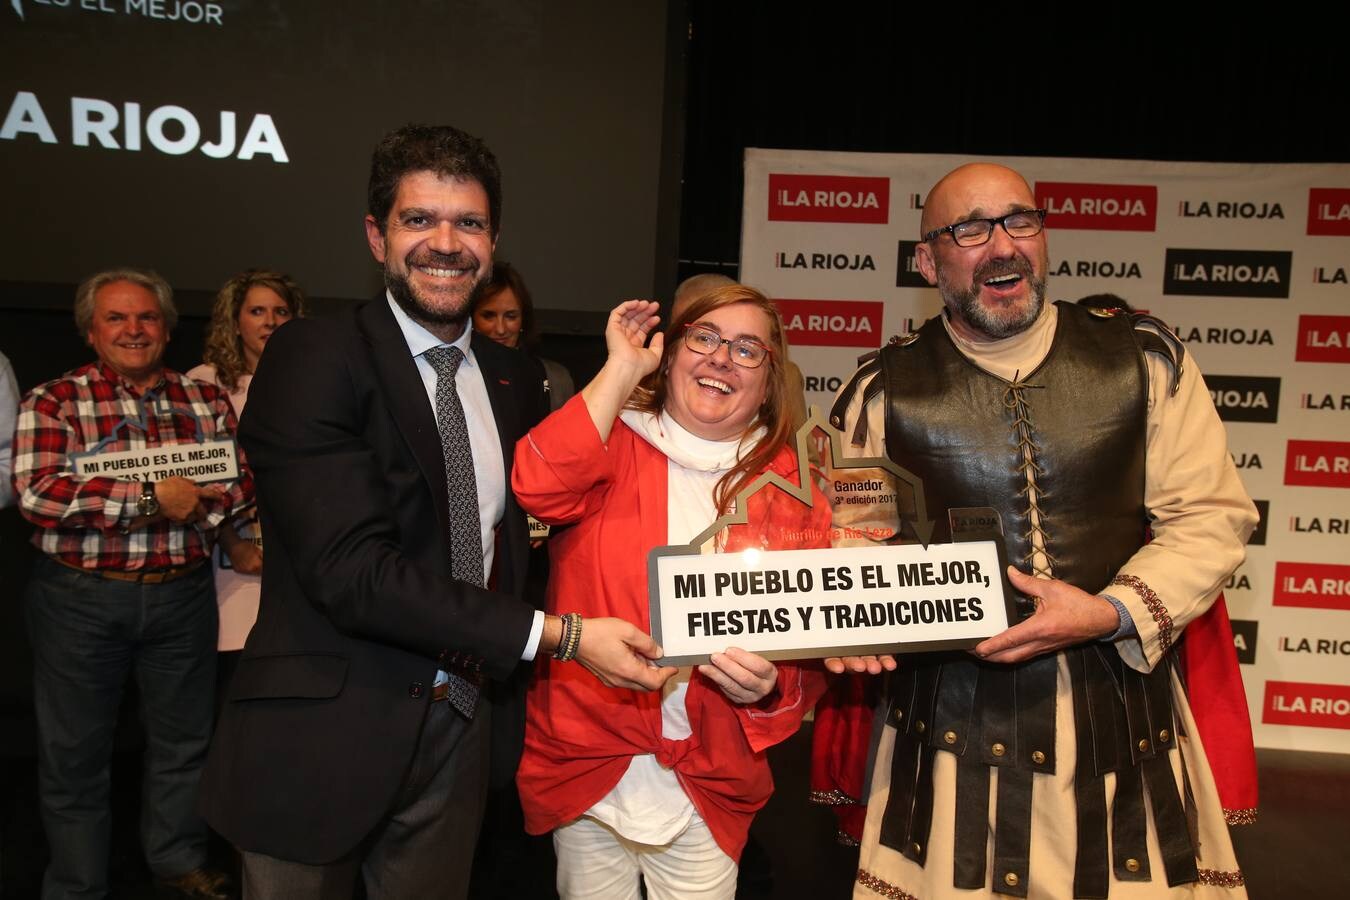 Murillo se llevó el título de este certamen', impulsado por Diario LA RIOJA, tras una bontia gala llena de alegría e ilusión